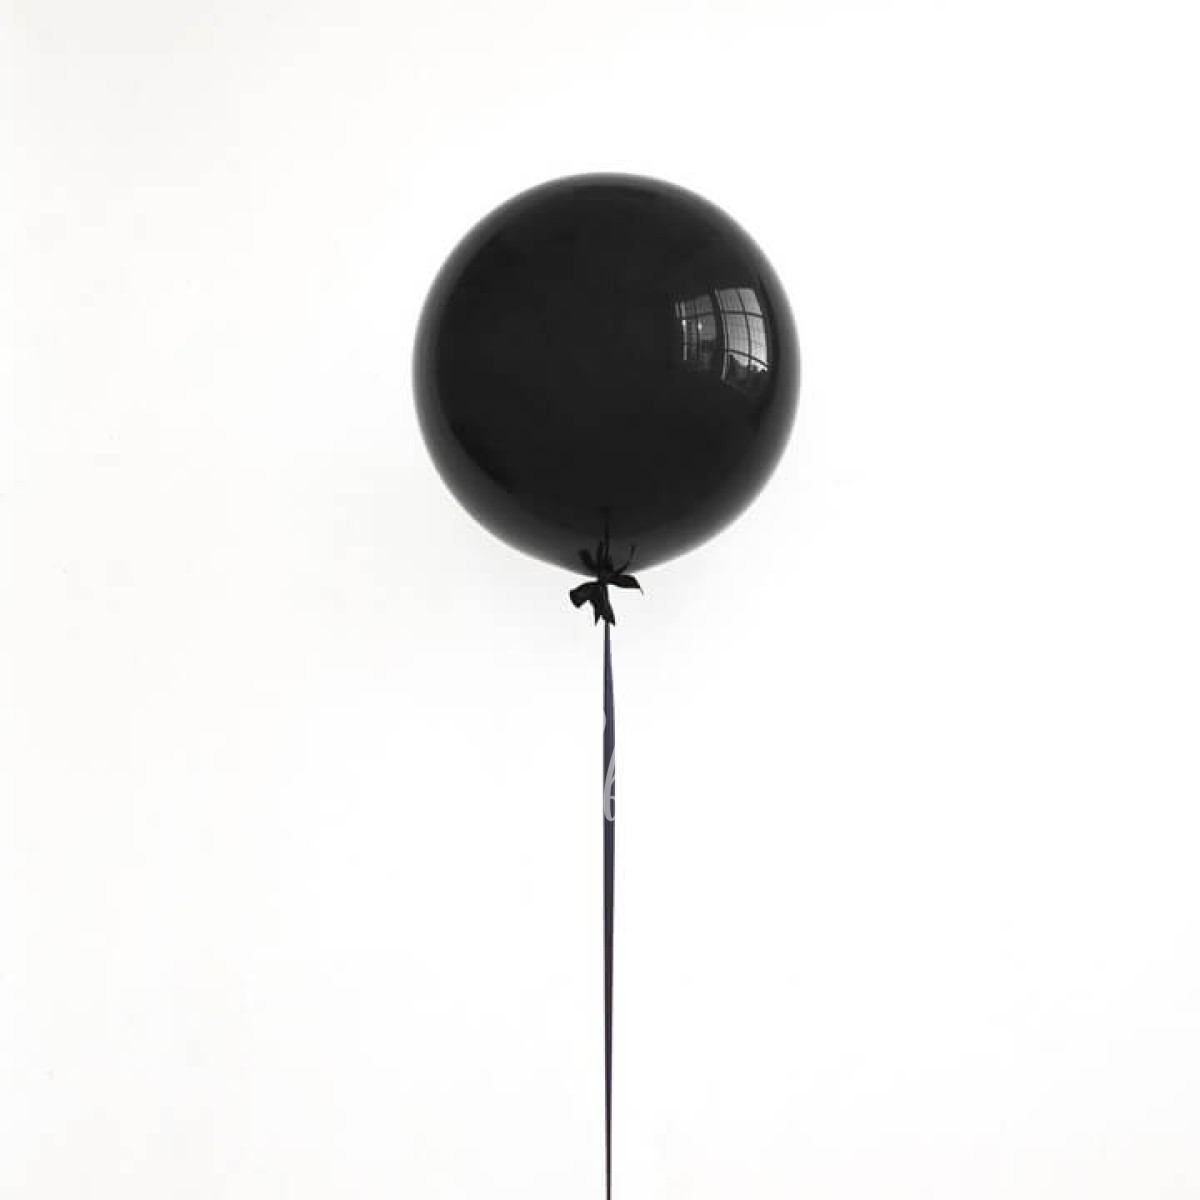 Черный воздушный шарик. “Черный шар” (the Black Balloon), 2008. Черный воздушный шар. Большой шар. Шар черный латексный.